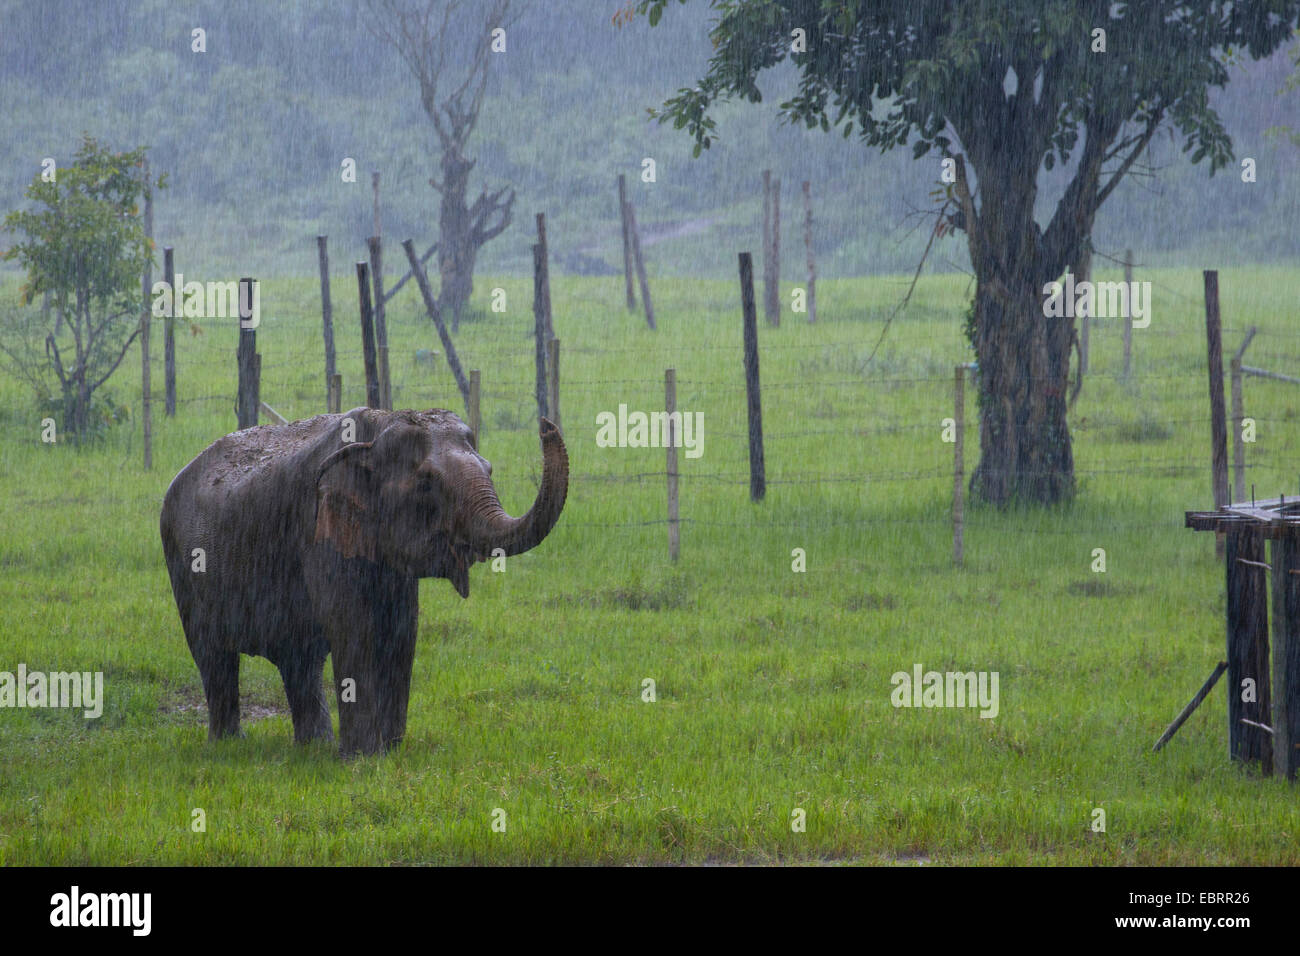 Asiatischer Elefant, Asiatischer Elefant (Elephas Maximus), im Freigehege in strömendem Regen, Thailand, Chiang Mai Stockfoto